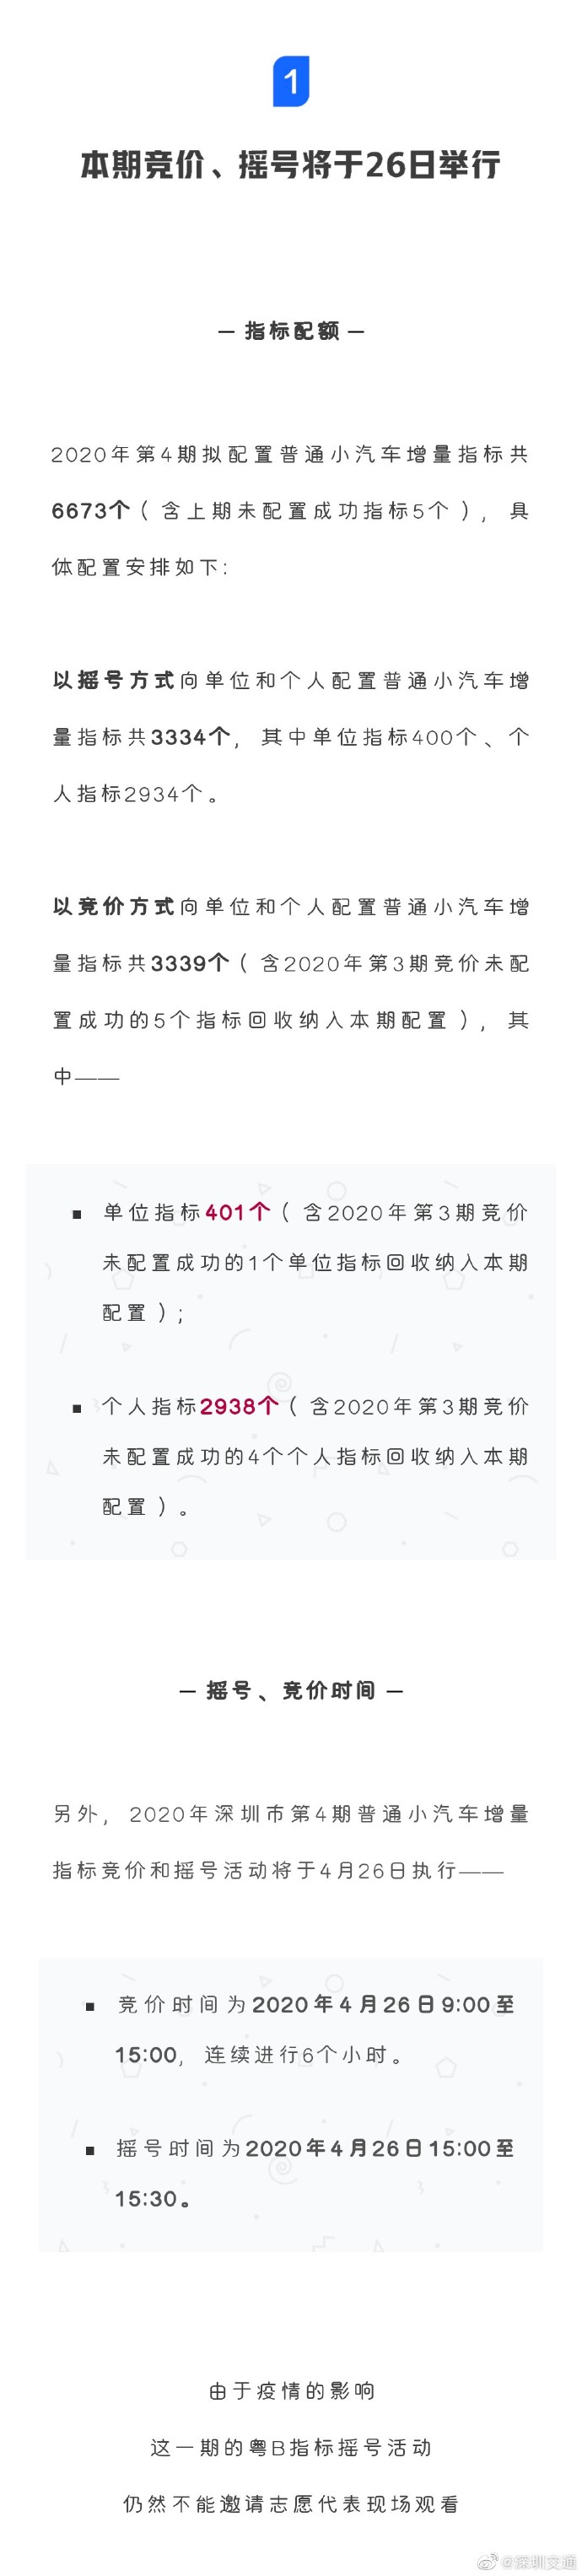 2020深圳第4期小汽车增量指标竞价摇号即将开始